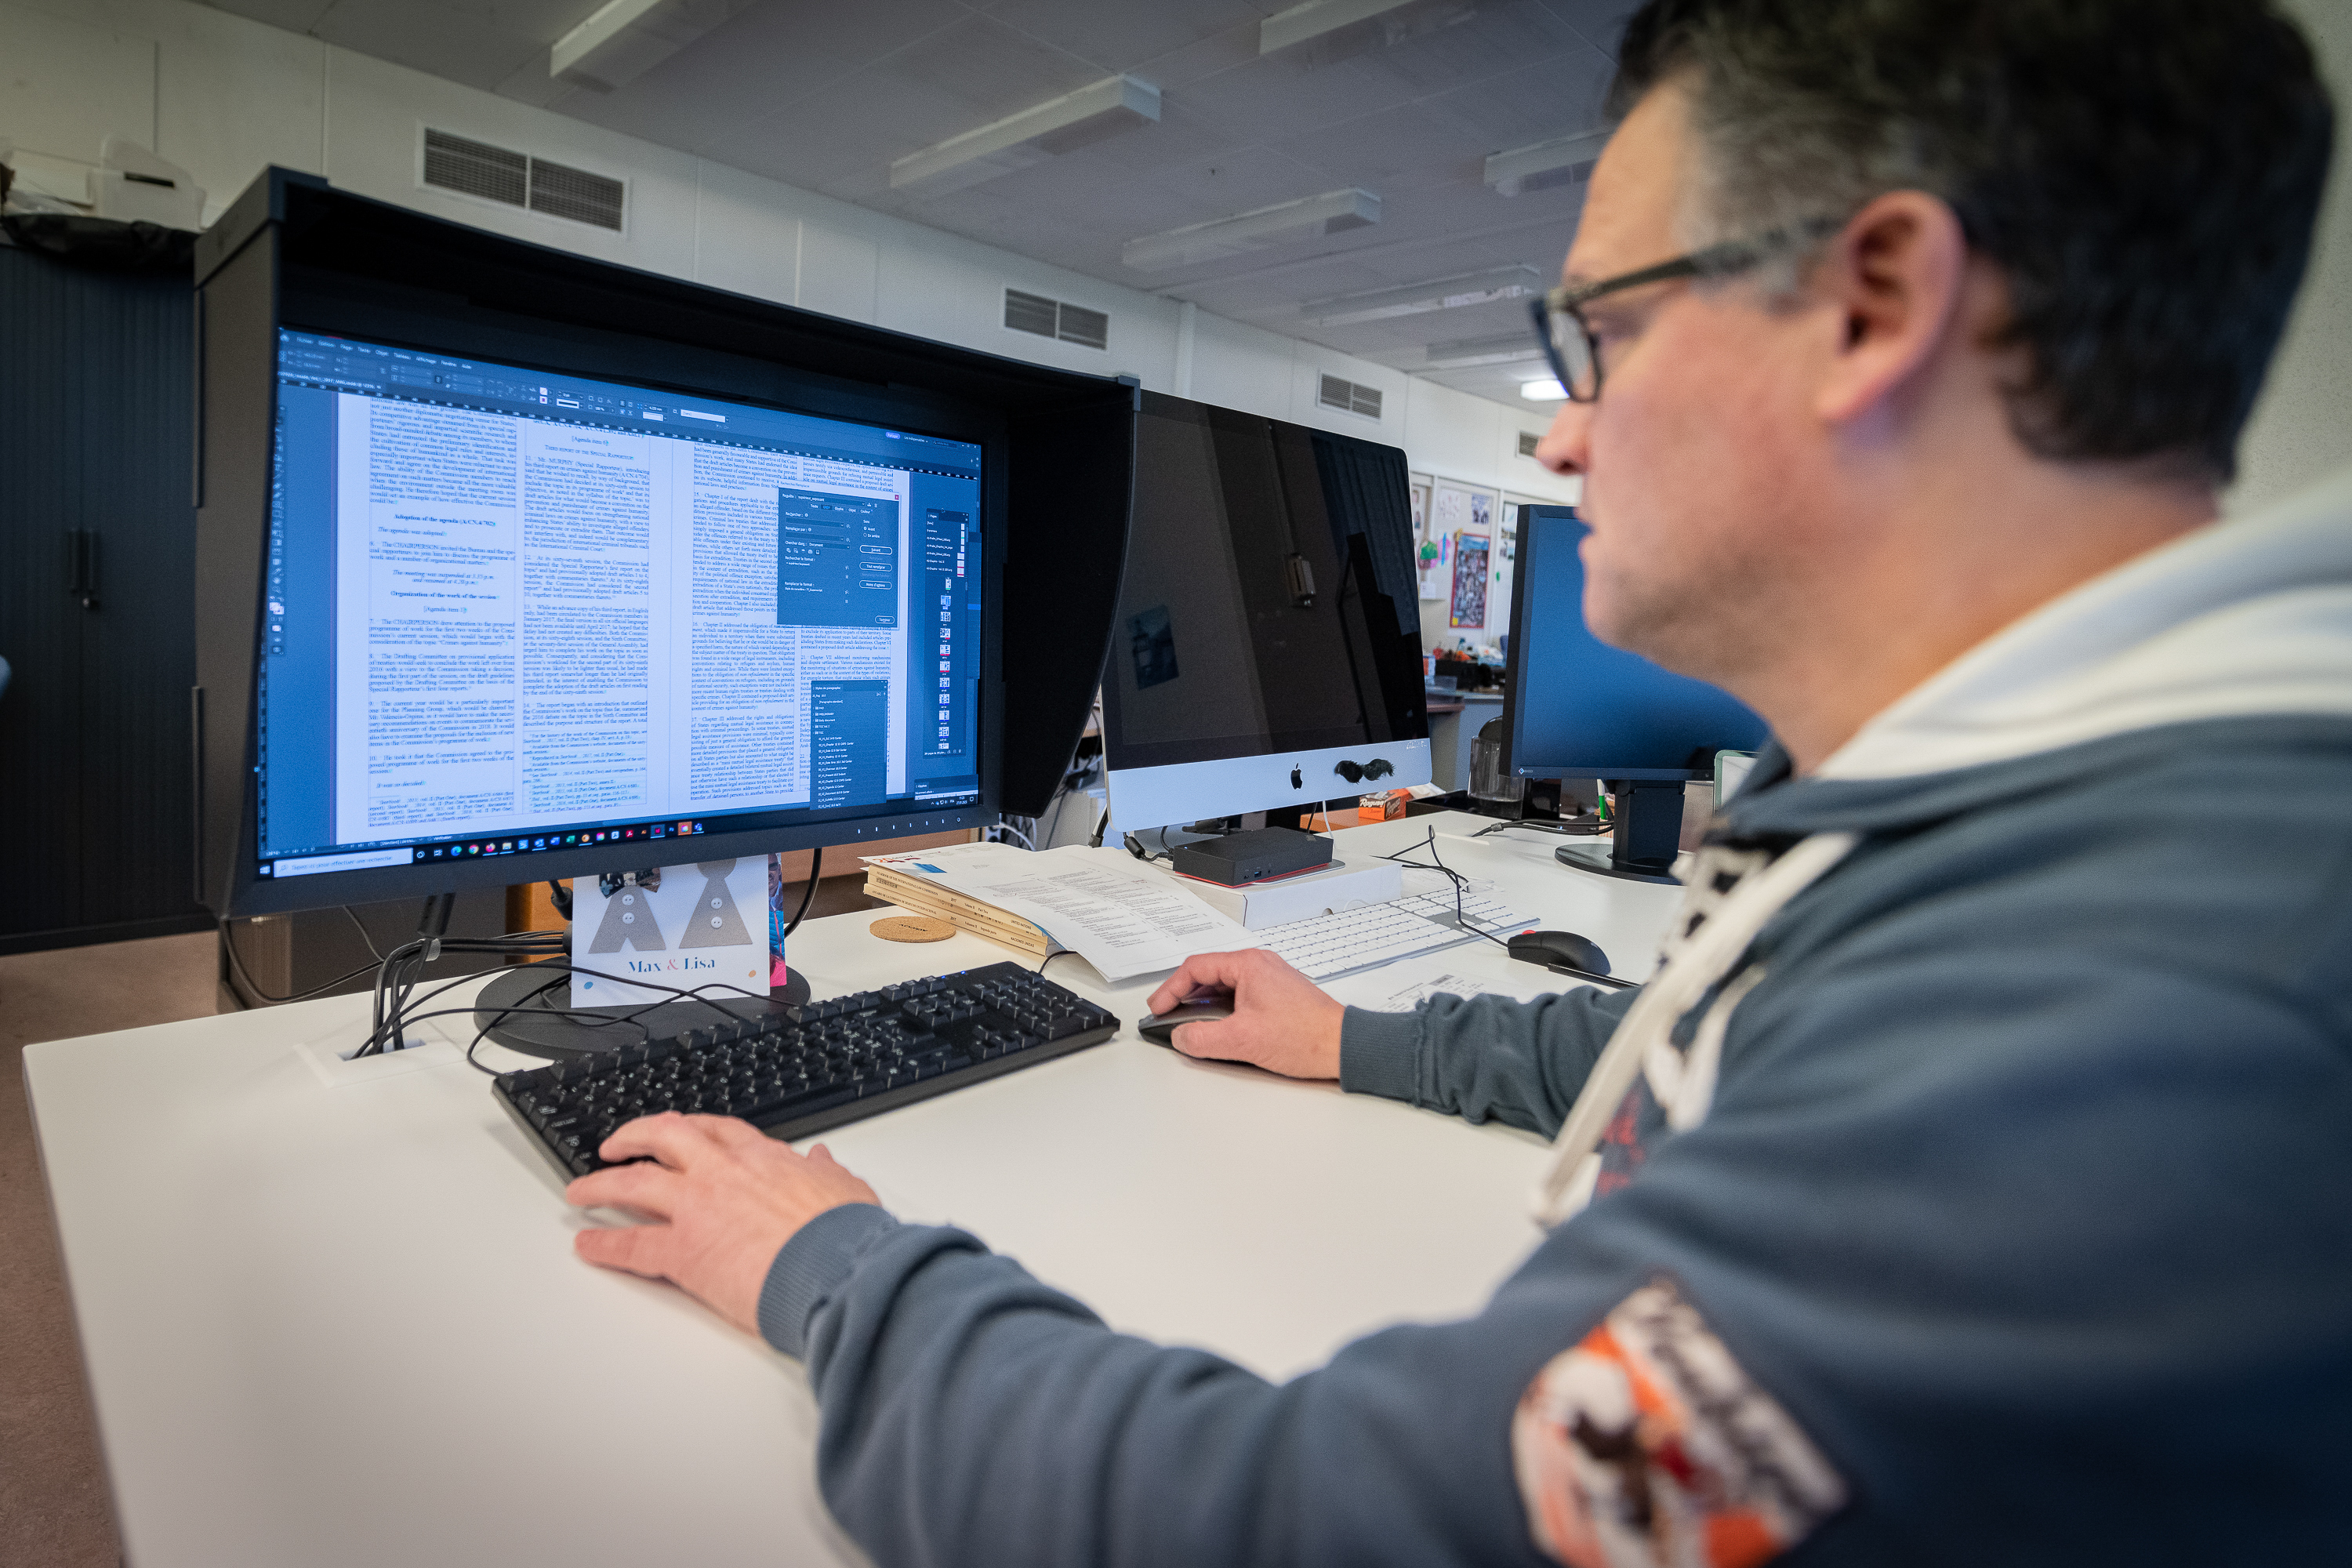 Un homme est assis à un bureau et travaille sur un ordinateur. Sur l'écran de l'ordinateur, un document est ouvert.